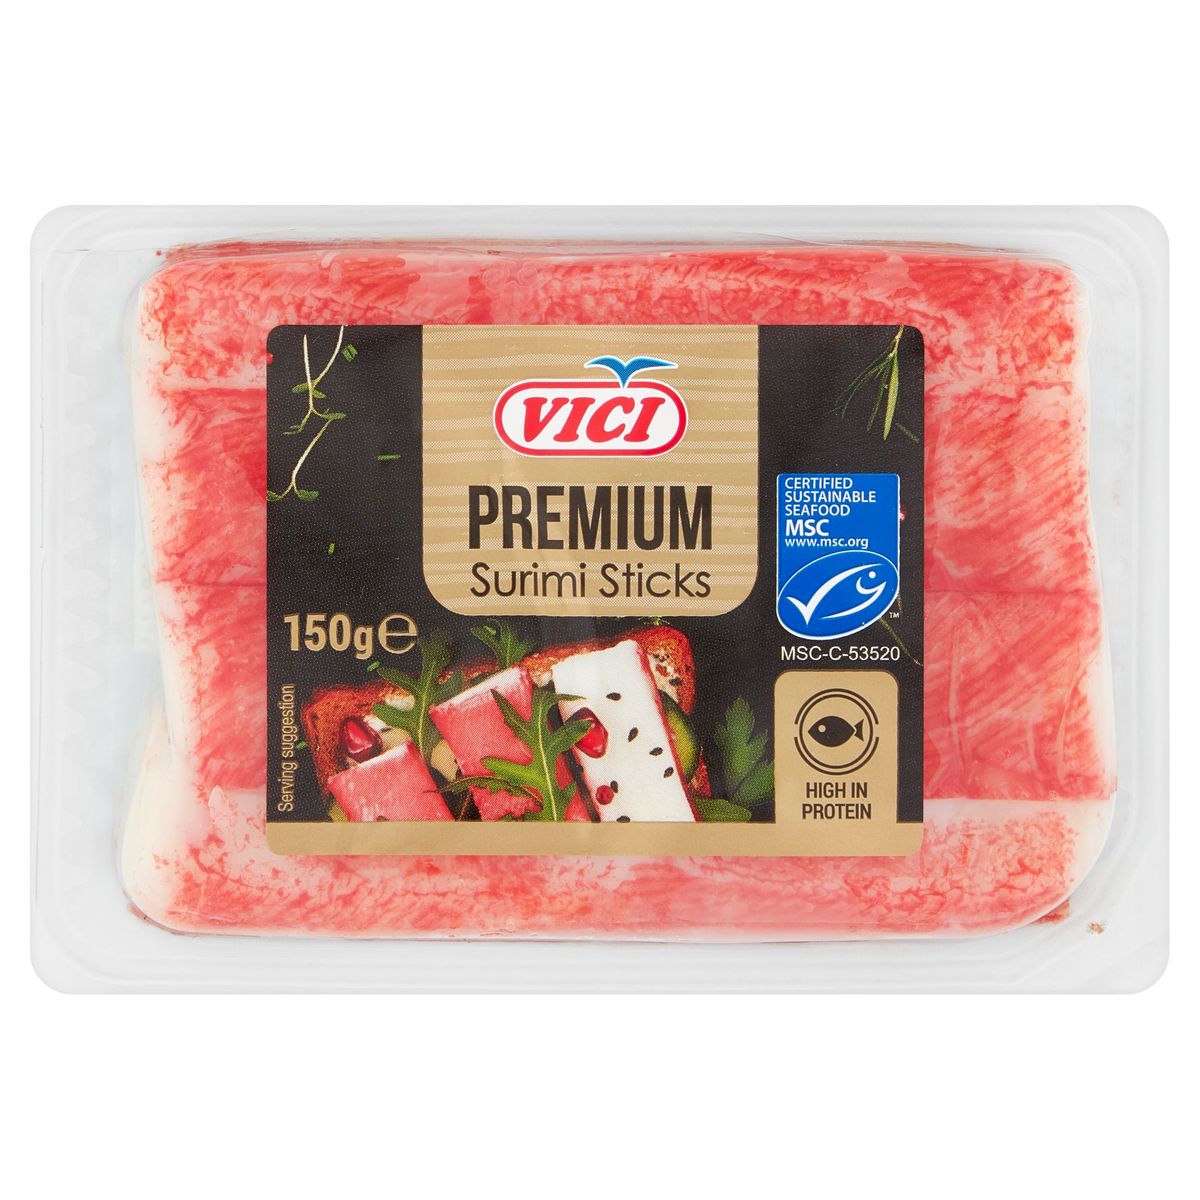 Vici Premium Surimi Sticks 150 g